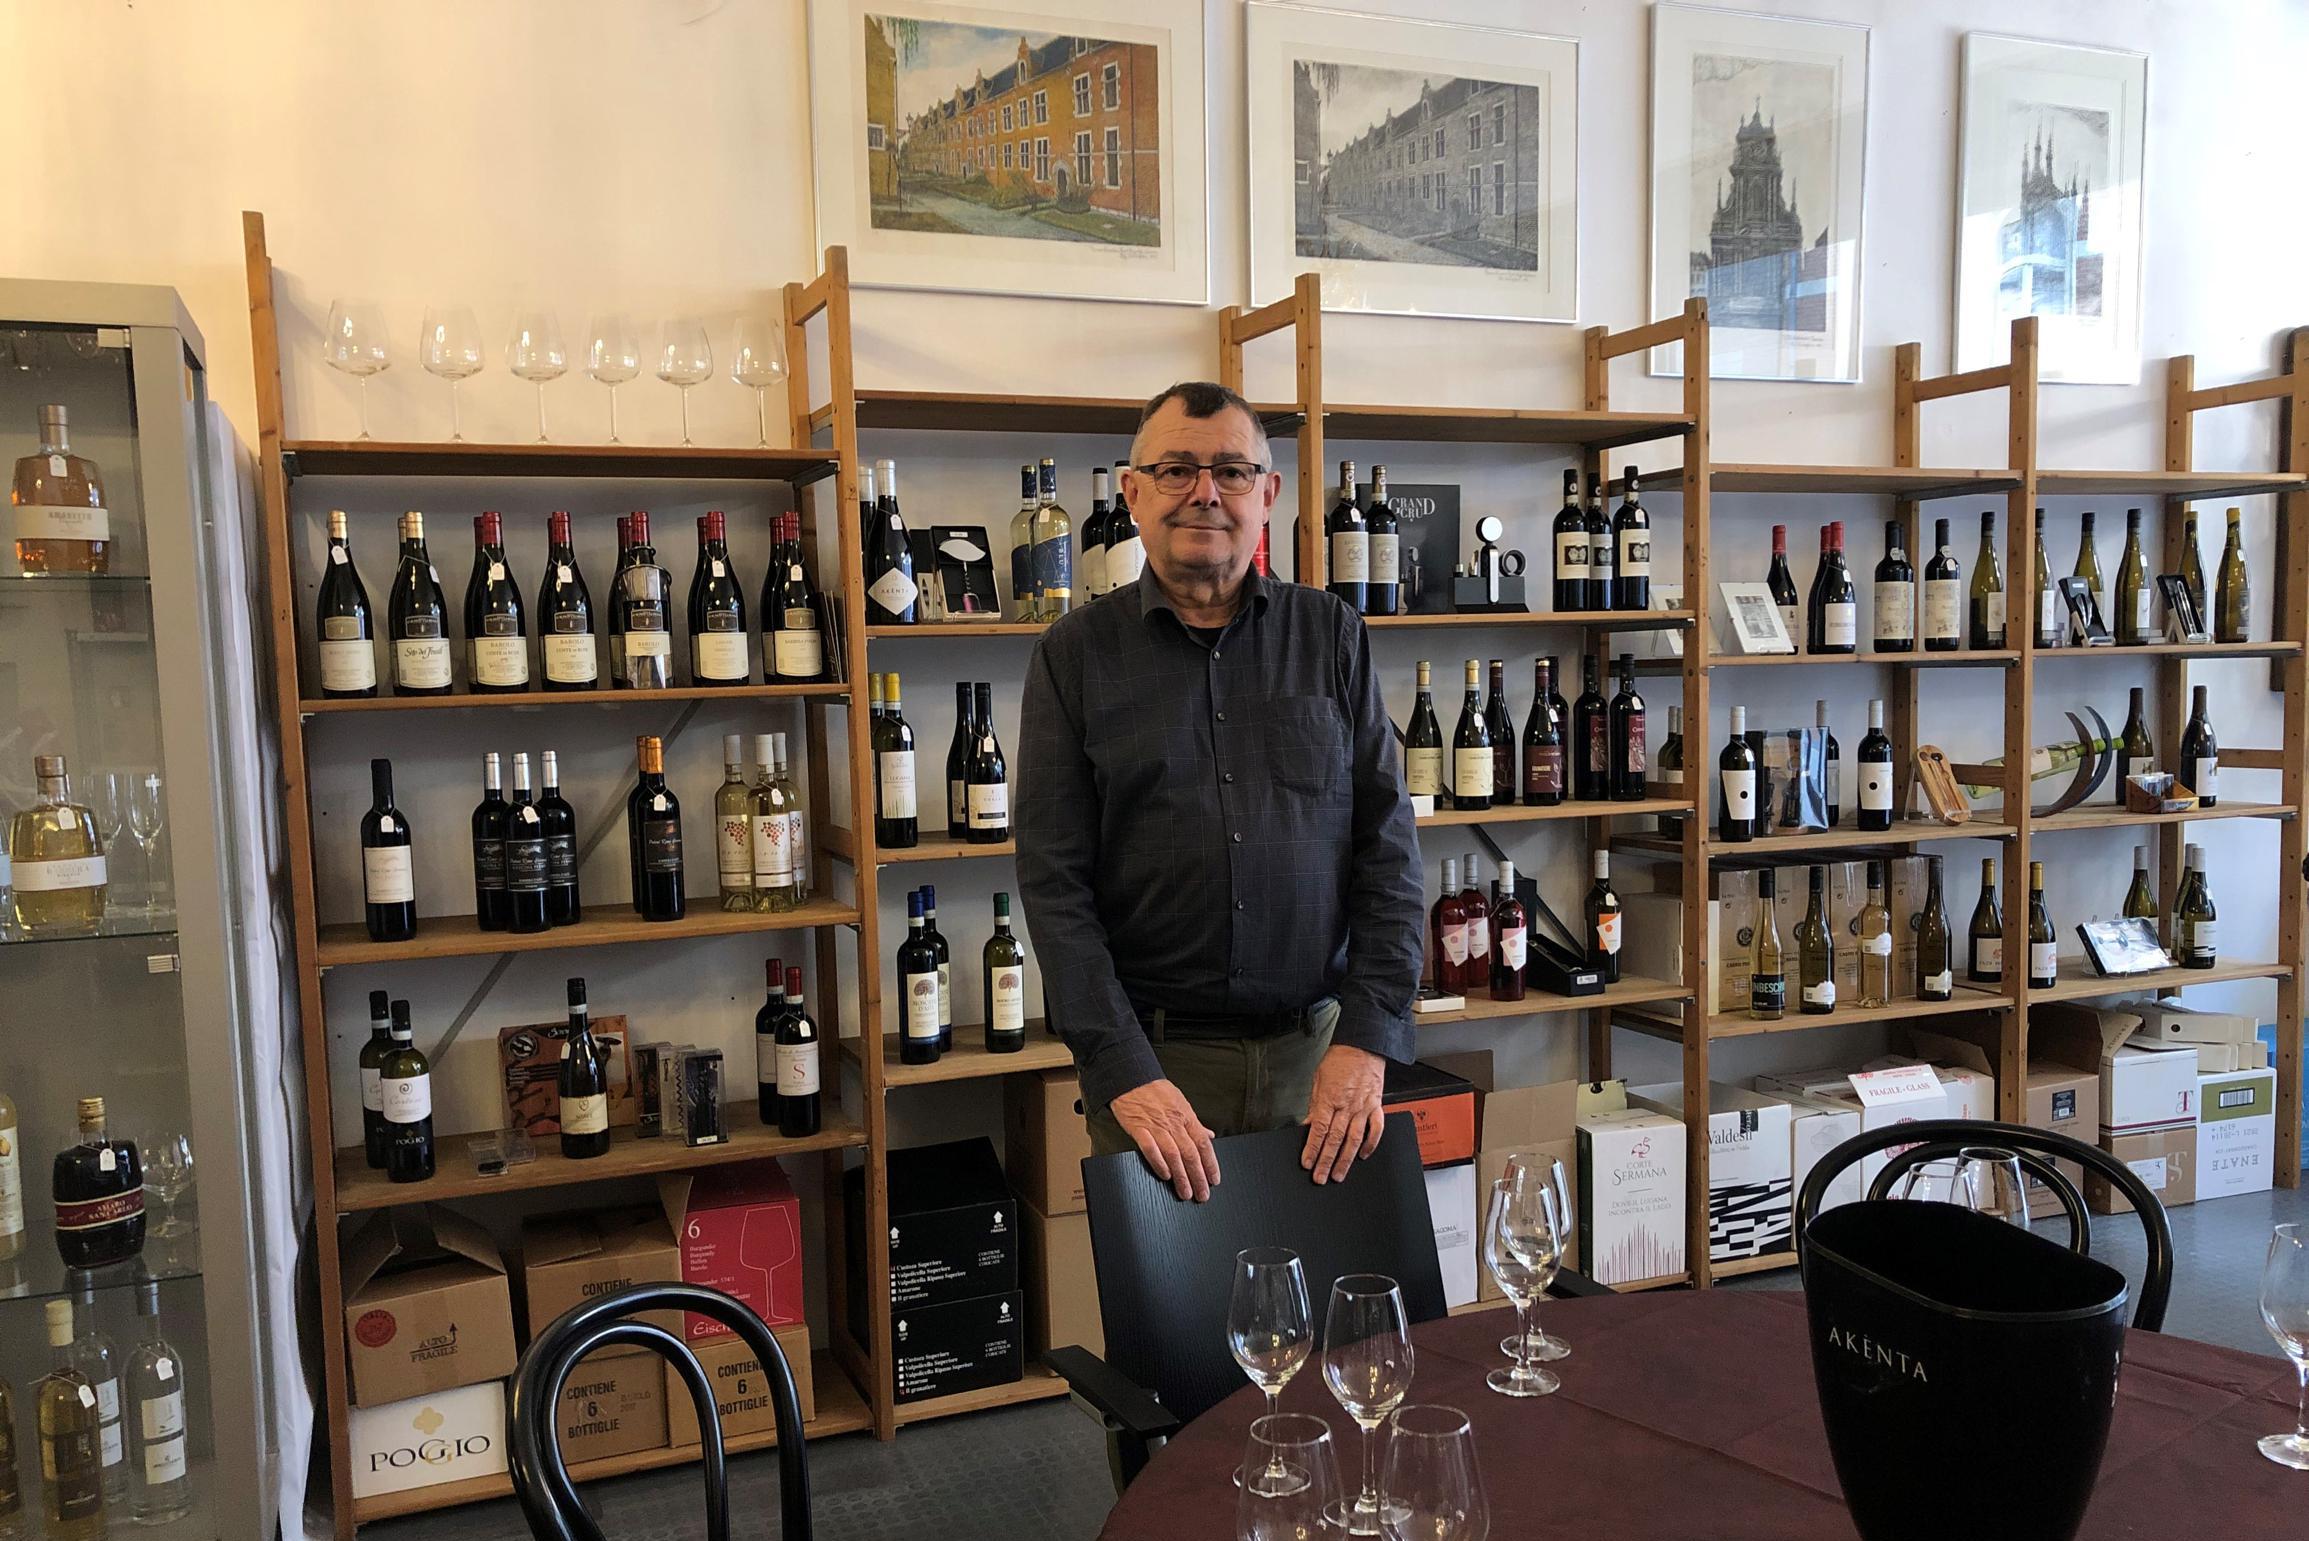 Autohandelaar Jan (63) neemt oude passie weer op en opent wijnhandel in stadscentrum: “Bijna pensioengerechtigd, maar moet ik dan de hele dag stilzitten?”